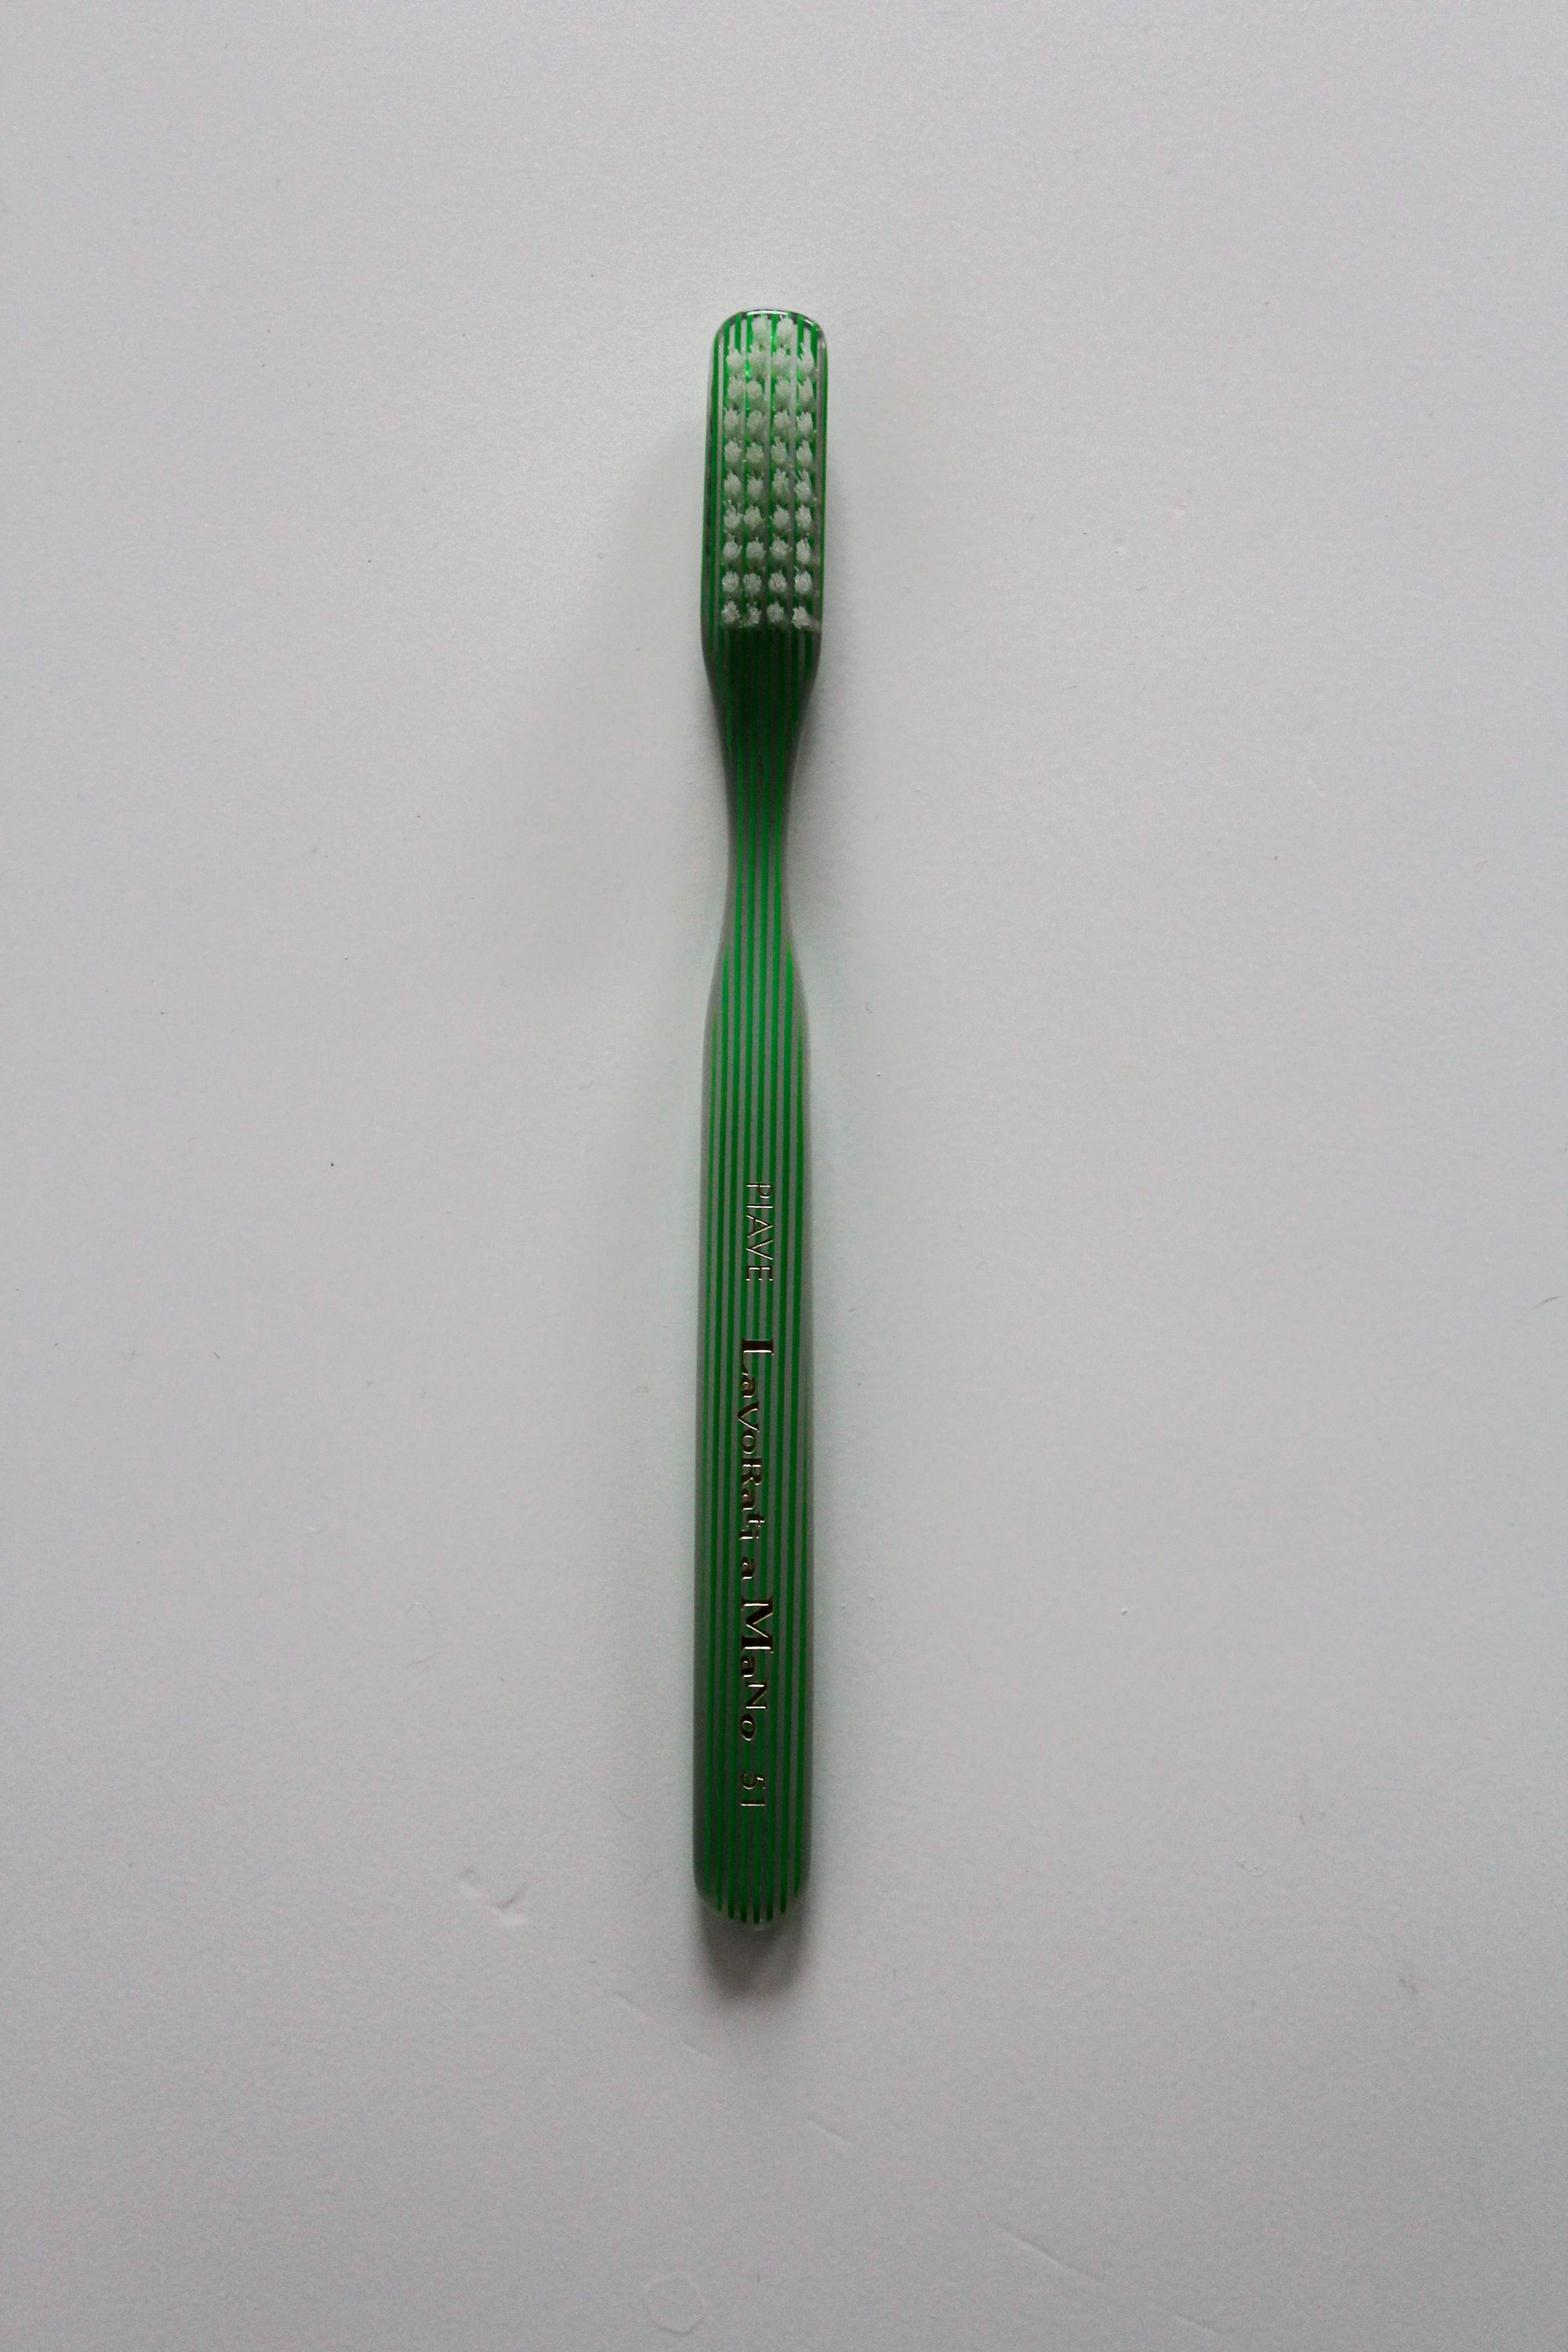 Athens Toothbrush